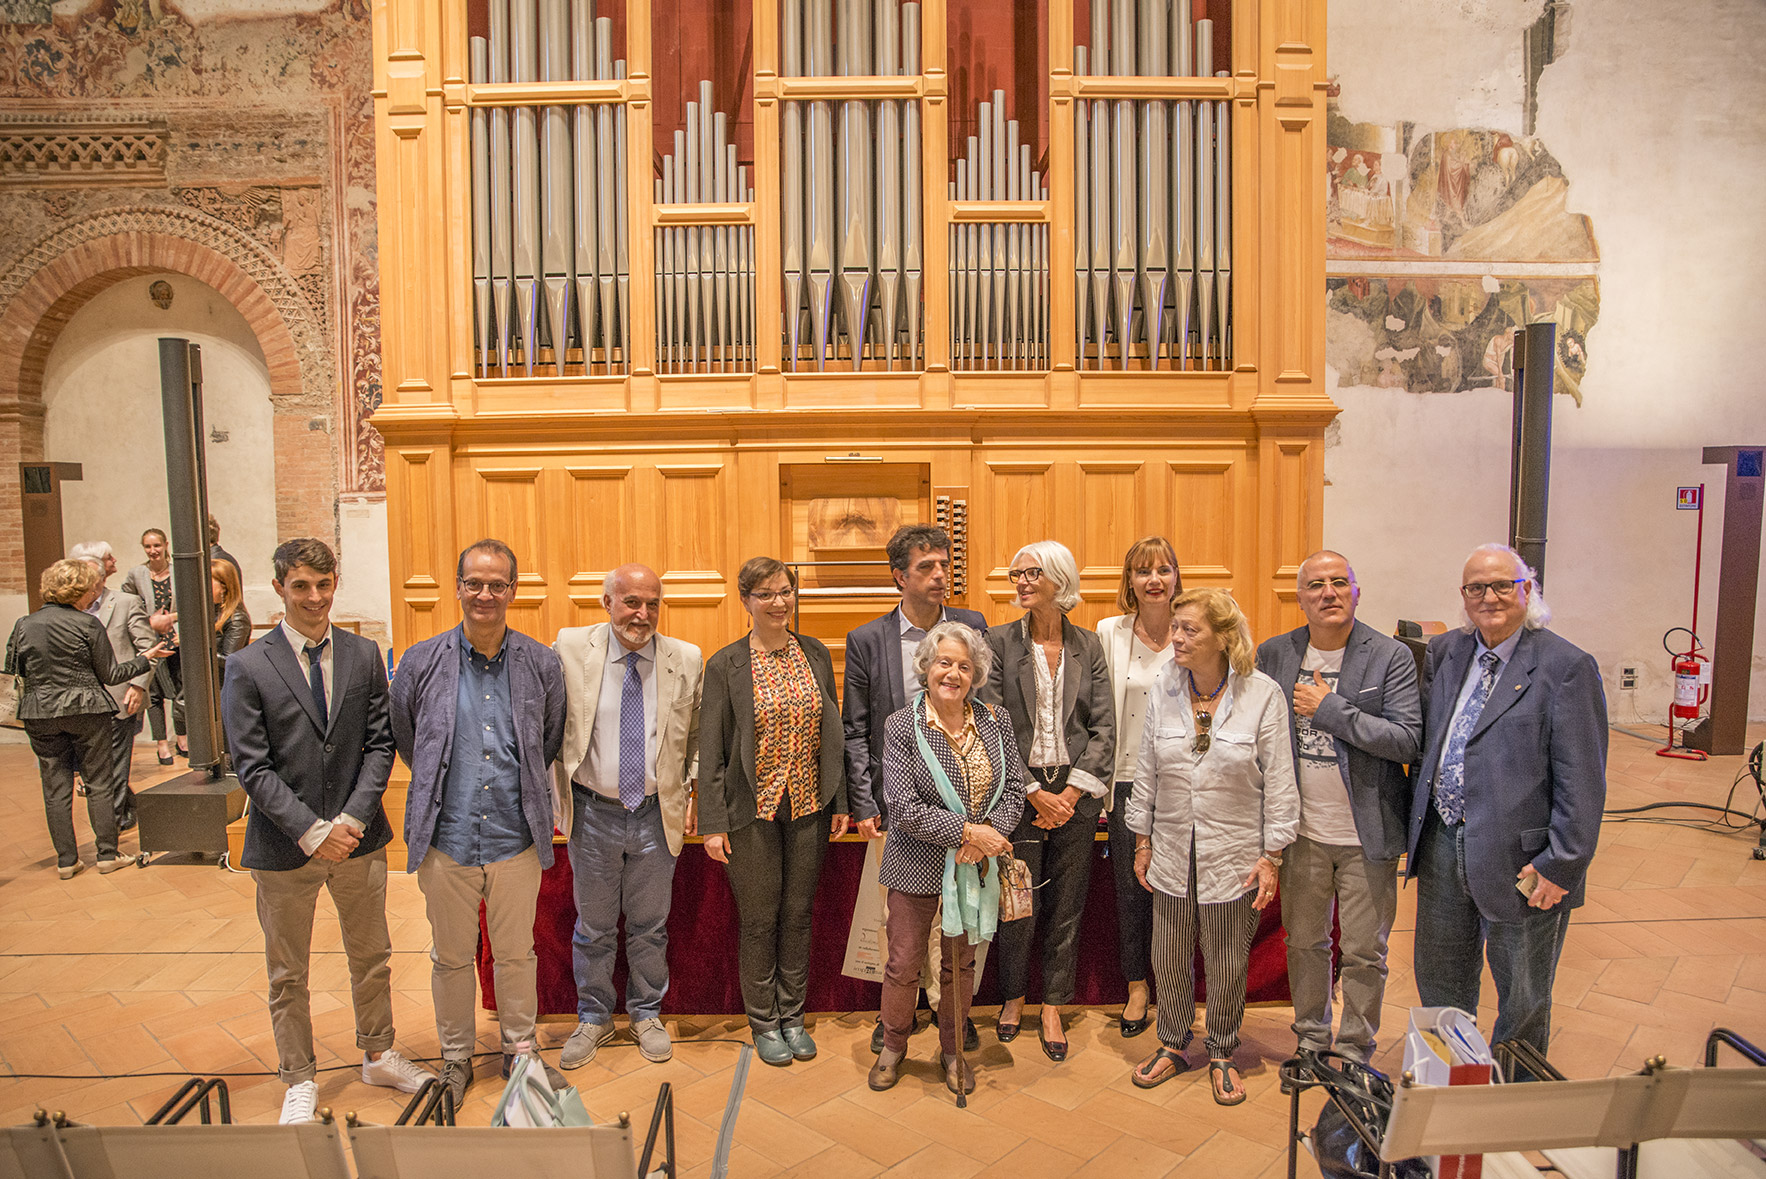 Premio letterario “Lorenzo Da Ponte”, scelti i cinque finalisti della terza edizione tra storie di musicisti clochard e la Venezia di Vivaldi (Qdpnews.it – 13 agosto 20921)